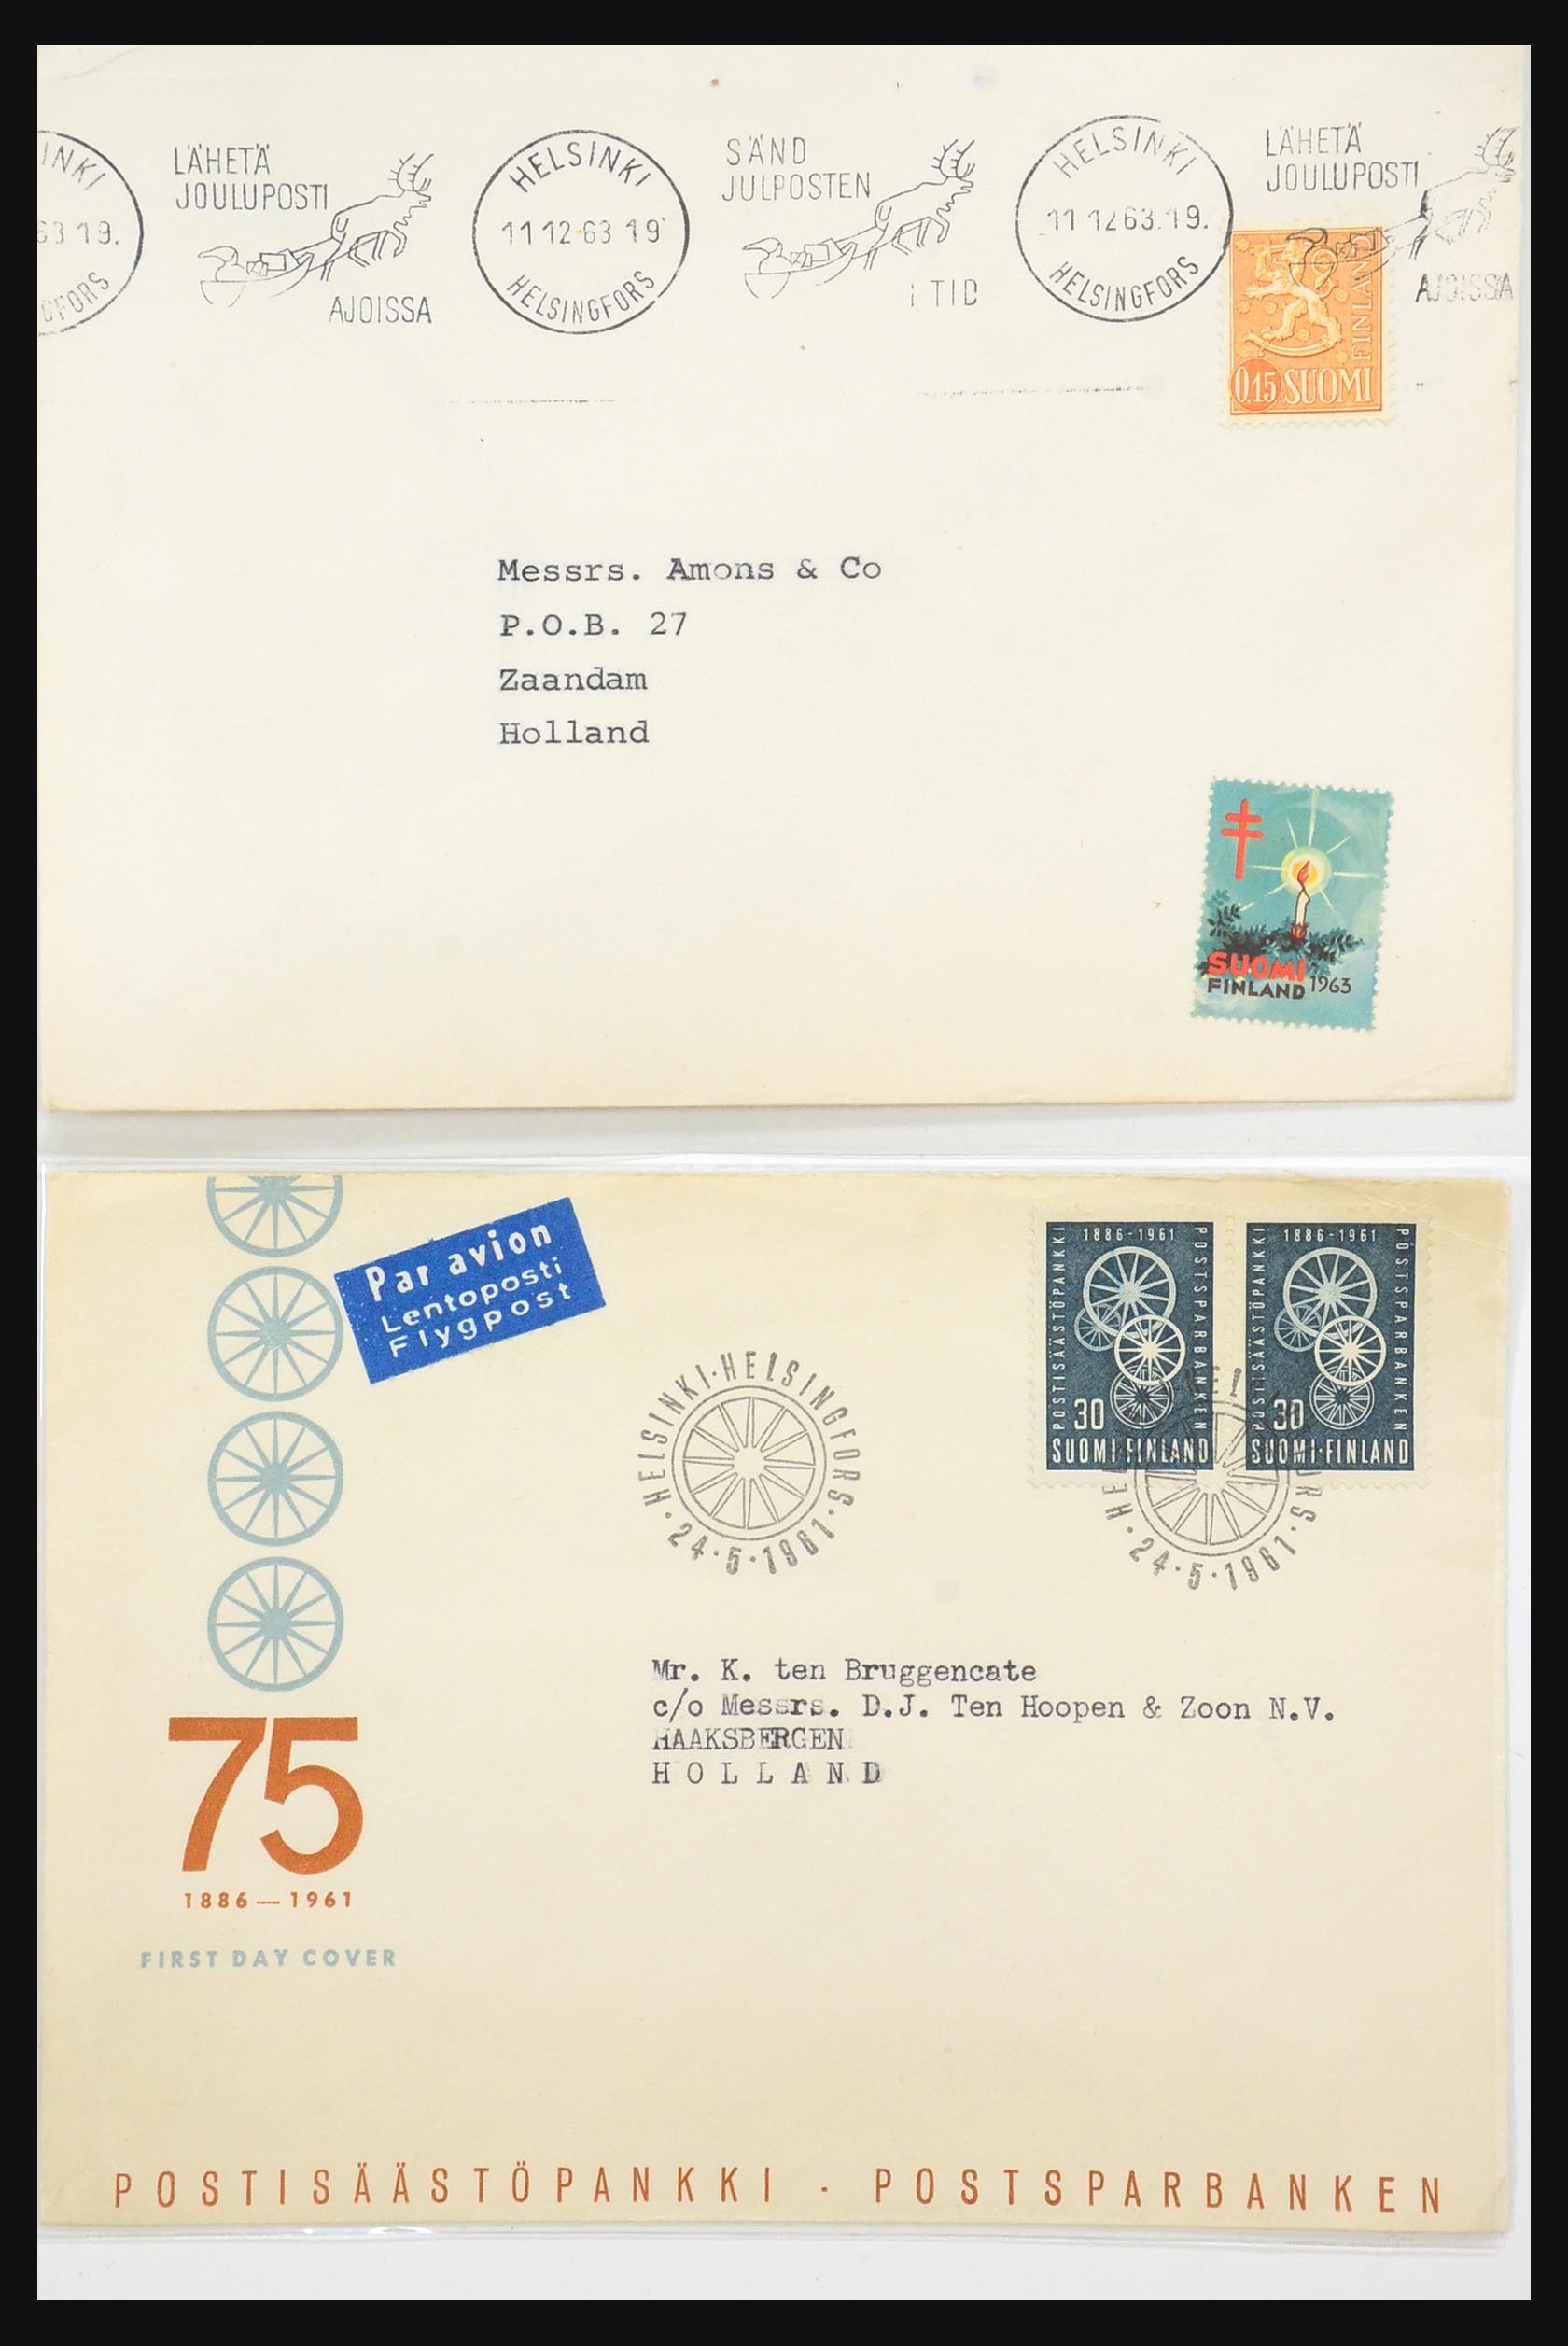 31363 060 - 31363 Finland brieven 1874-1974.